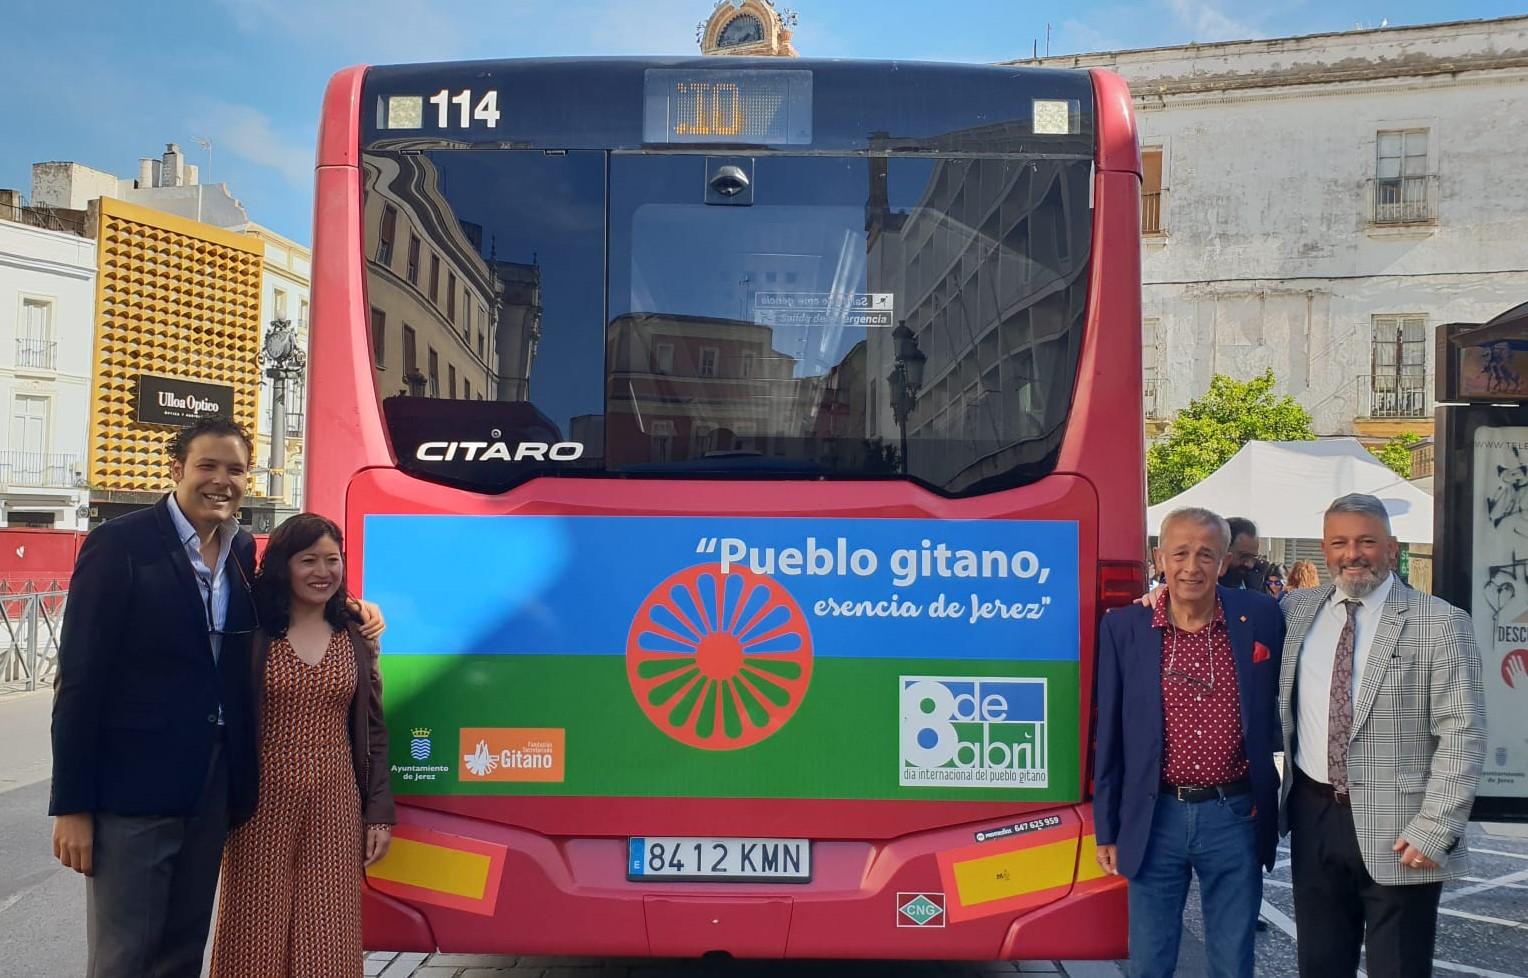 Los autobuses urbanos de Jerez conmemoran el Día Internacional del Pueblo Gitano